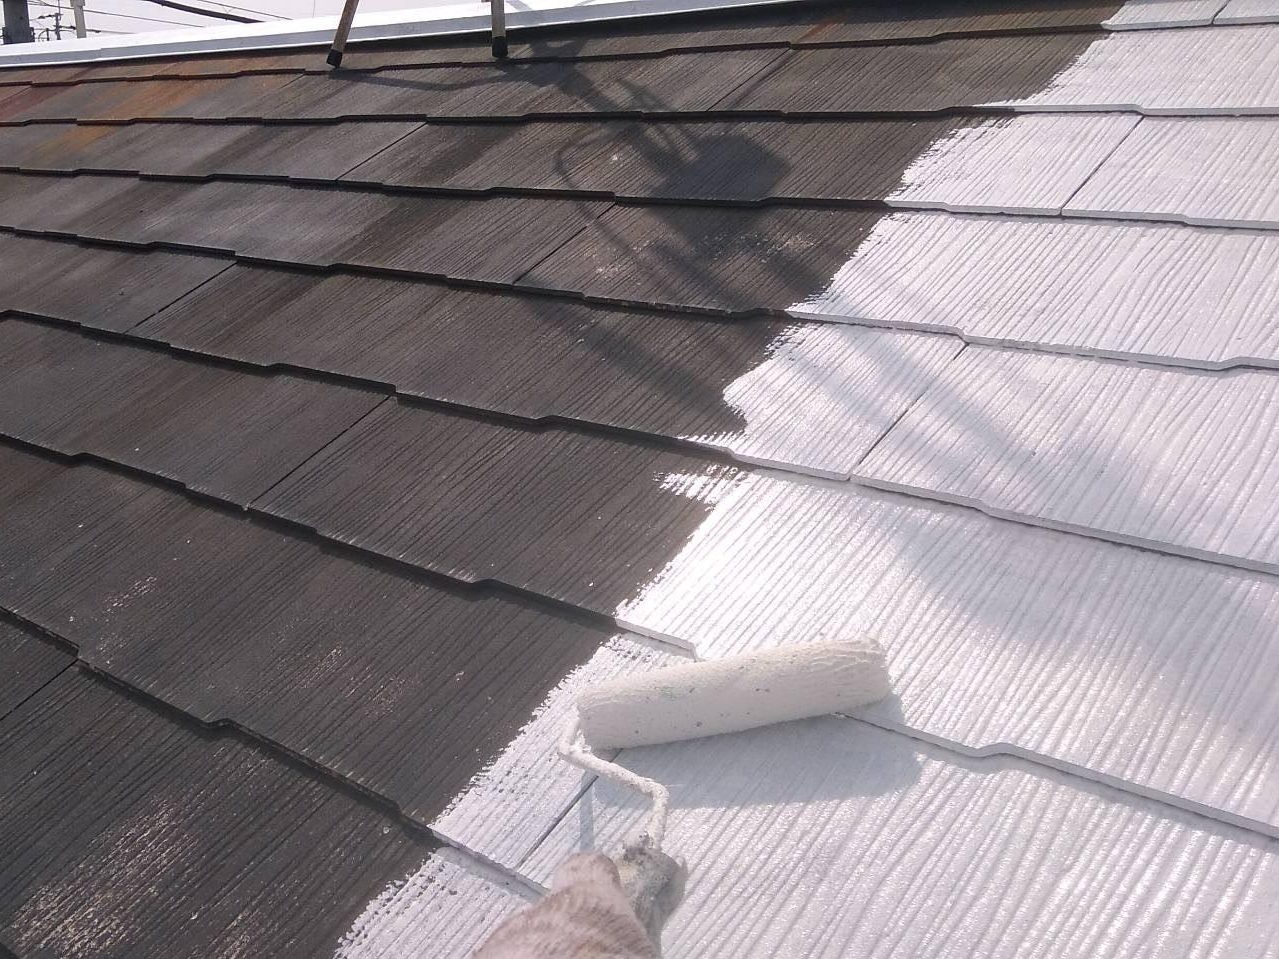 福岡県福岡市東区雁ノ巣のT様邸で汚れやコーキングの傷みが発生している外壁とサビが広がり色褪せてしまっている屋根を塗り替えました。3/16完成です。【HPより】